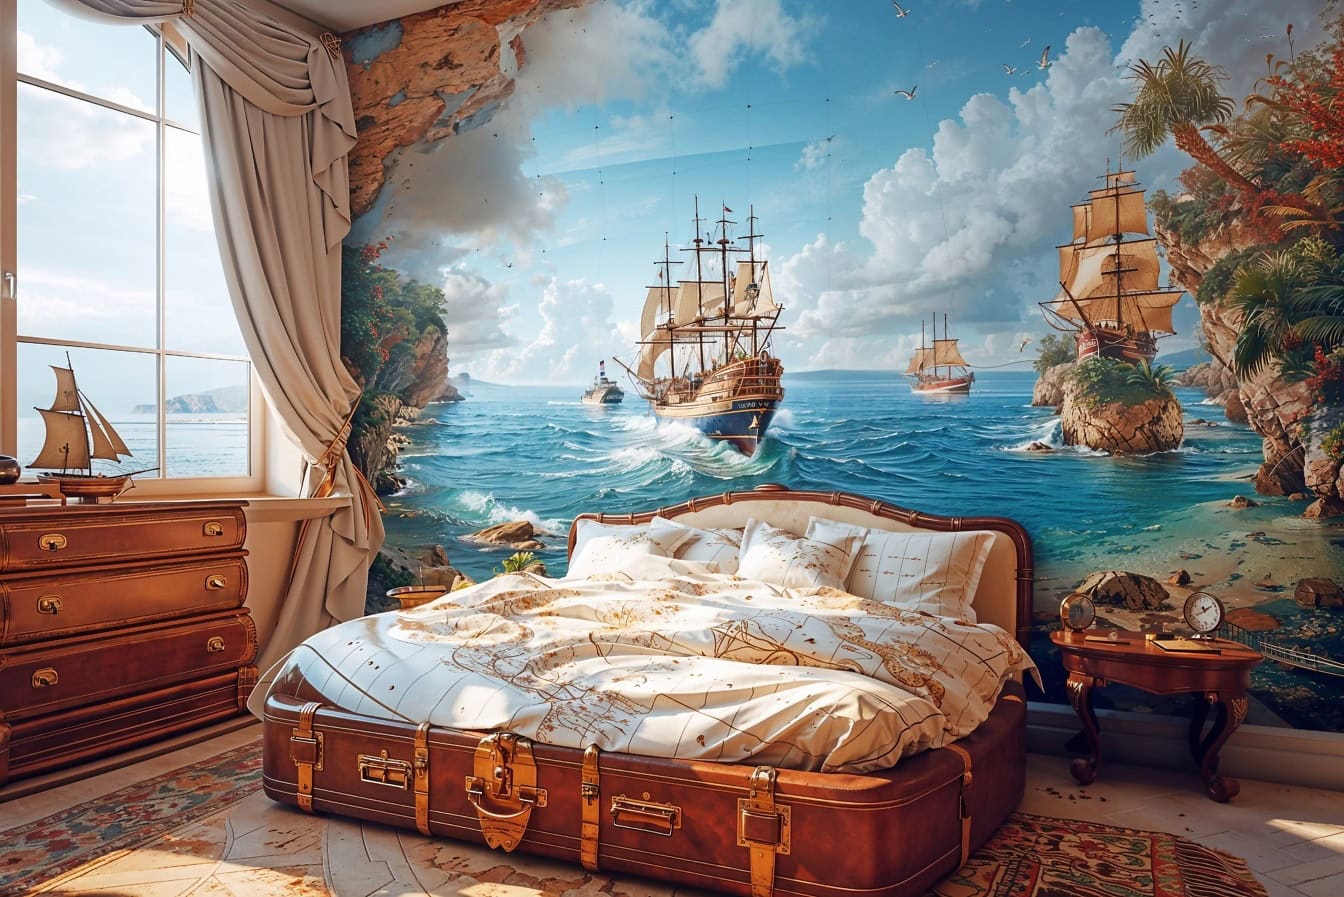 Kapiteinsslaapkamer met een groot bed in de vorm van een oude koffer en met een grote maritieme muurschildering van schepen aan de muur